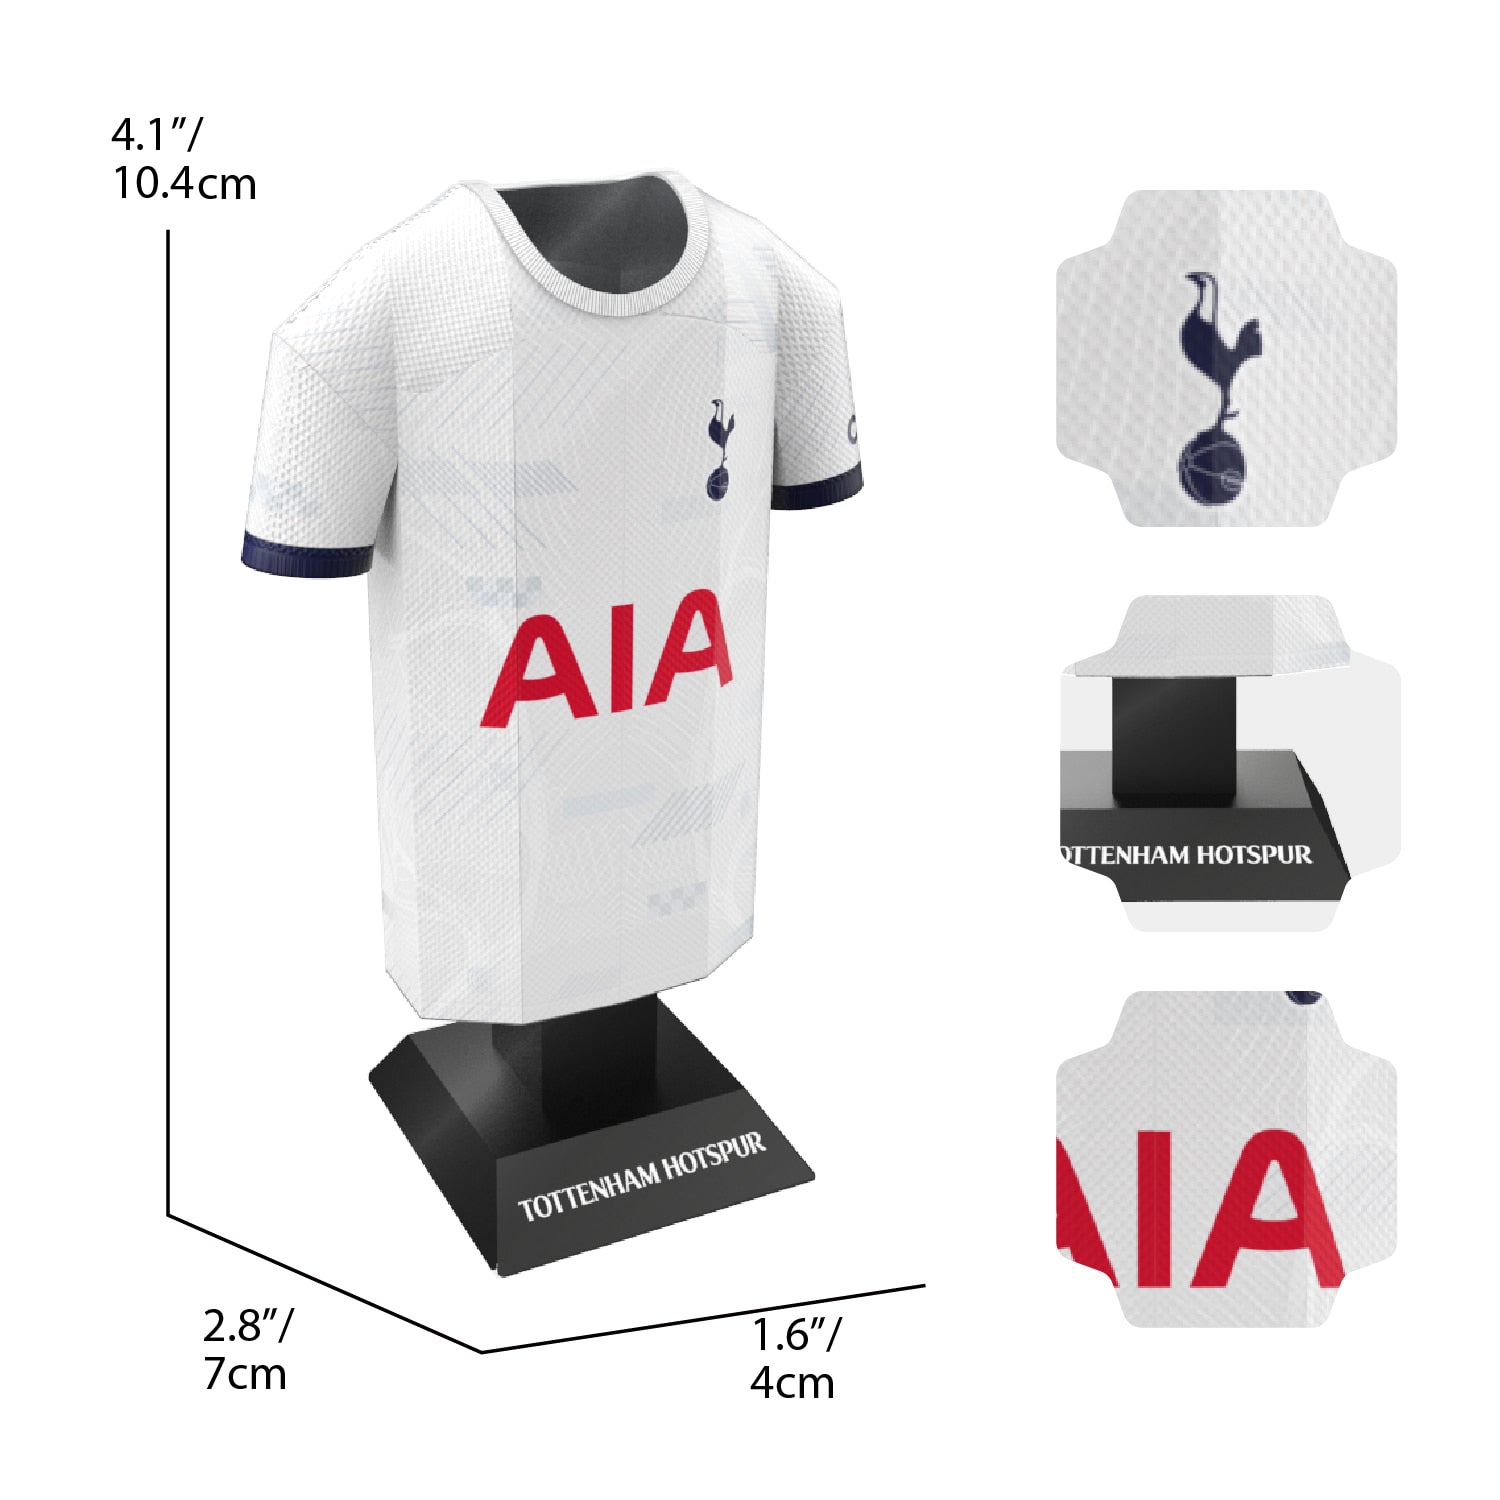 Tottenham home kit dimensions